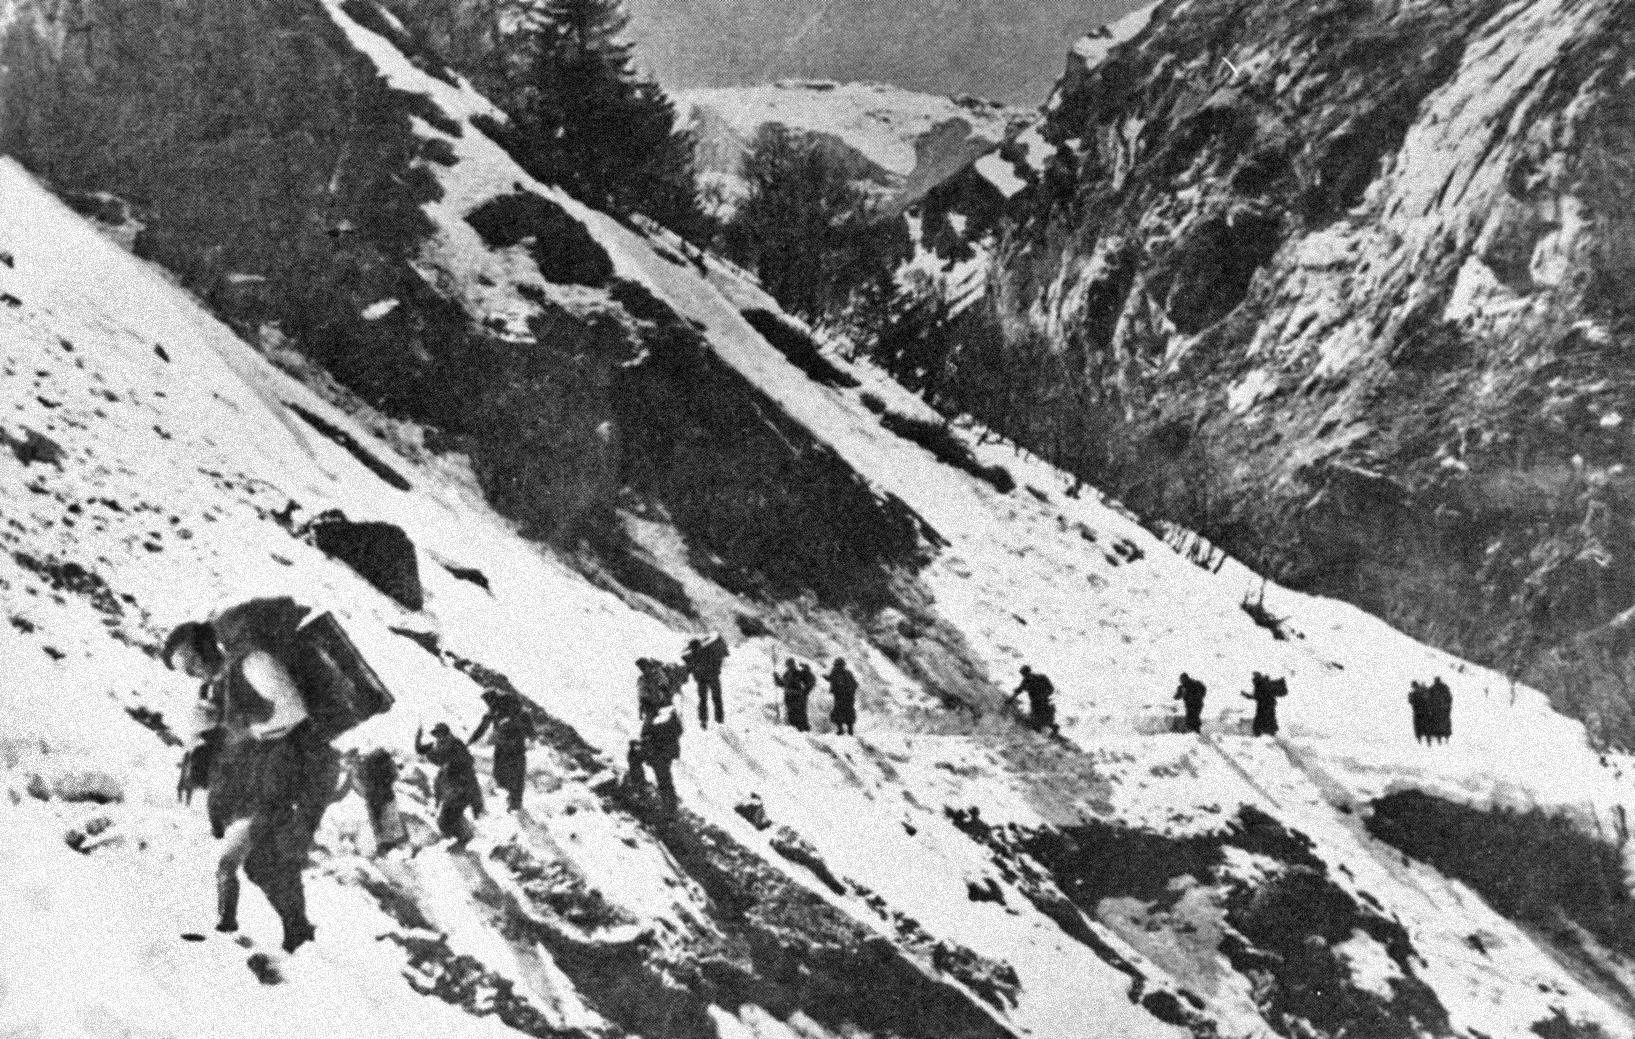 Els primers que van creuar els Pirineus van ser els polonesos, seguits de francesos en edat militar, que volien evitar el servei de treball obligatori alemany o unir-se a l'Exèrcit de De Gaulle